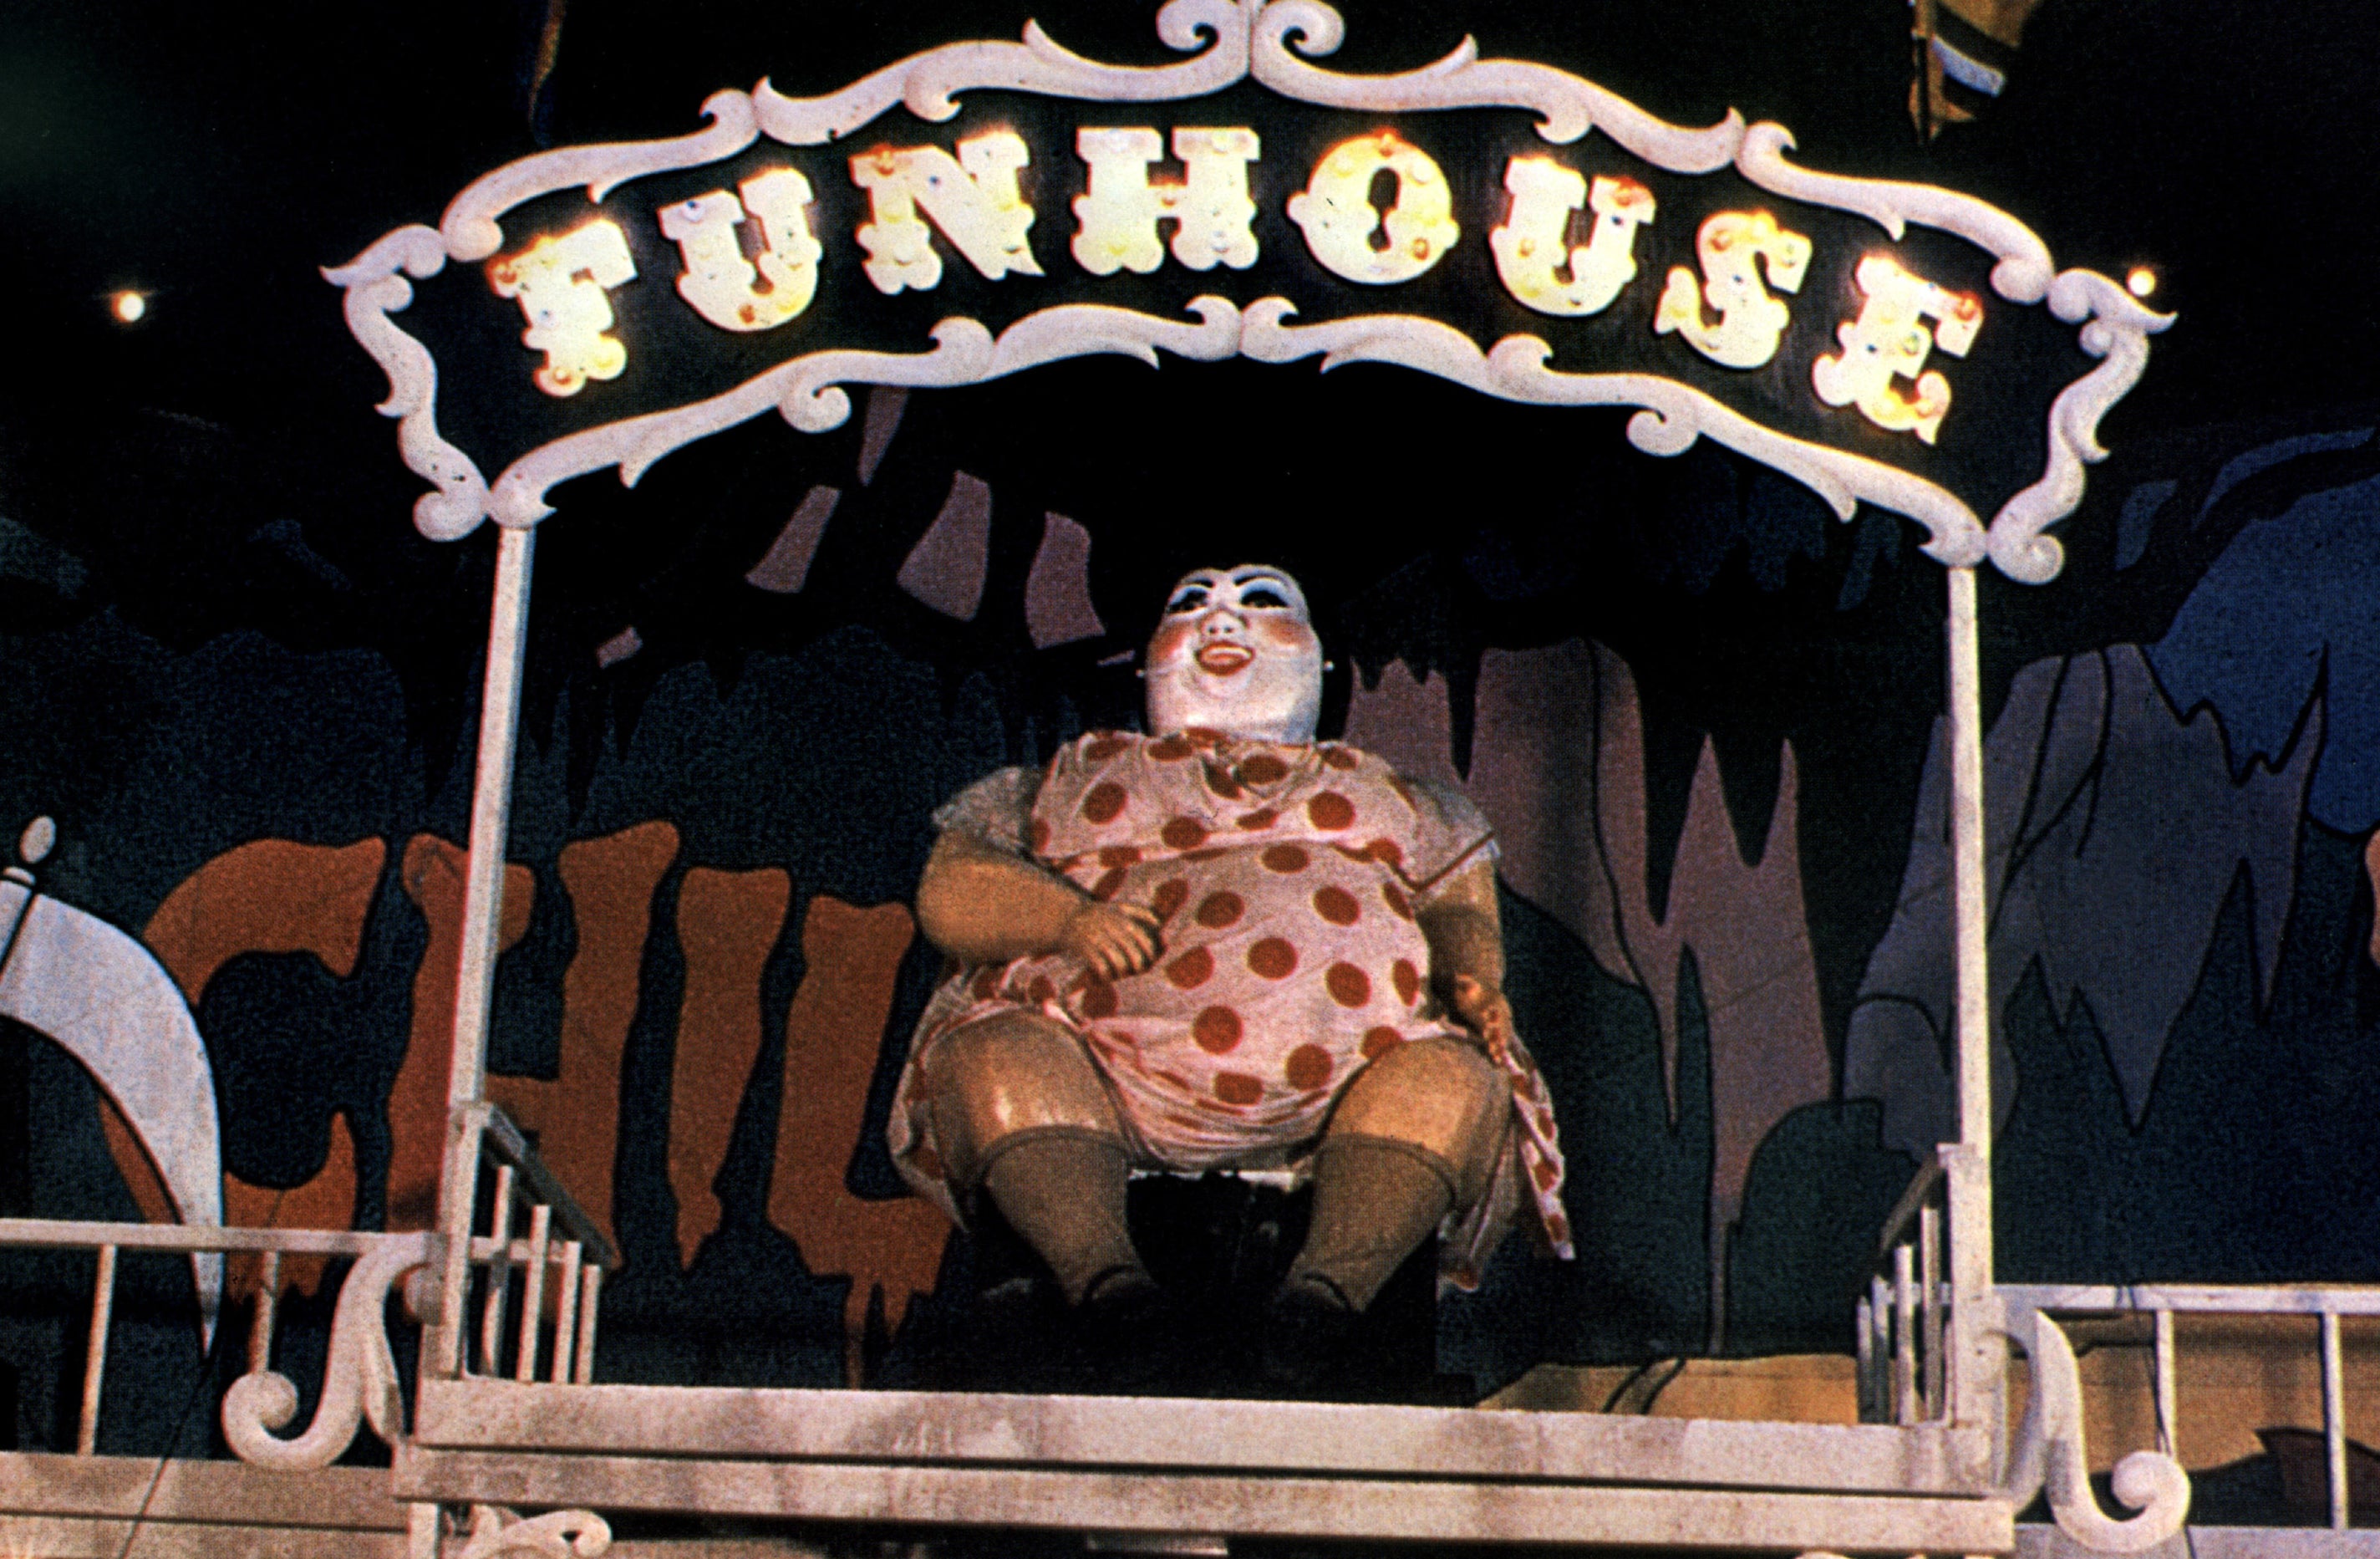 一个令人不安的clown-like雕像点缀的入口“Funhouse"